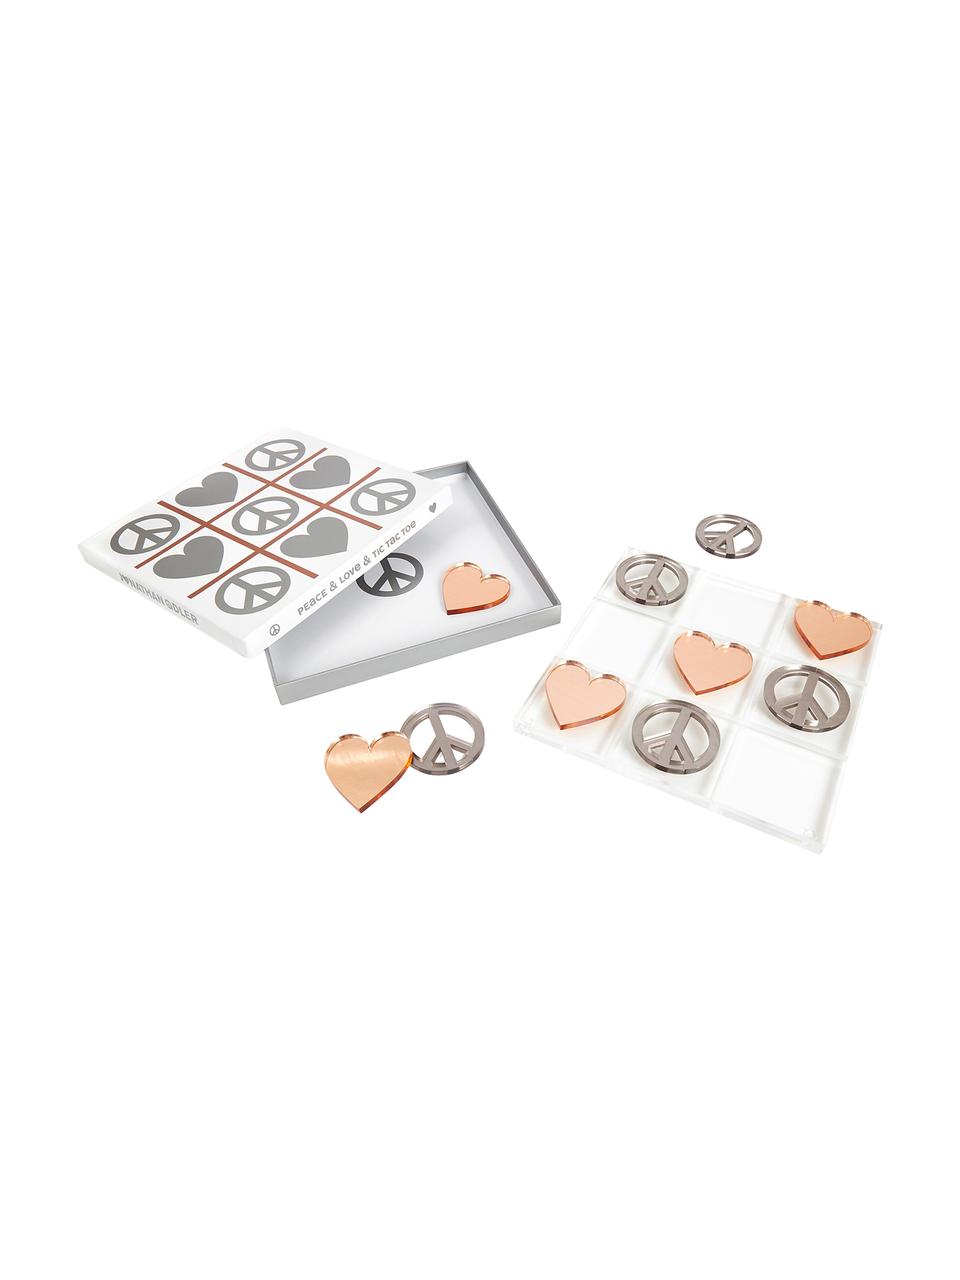 Desková hra Love & Peace Tic Tac Toe, Figurky: stříbrná a měděná<br>Herní deska: transparentní